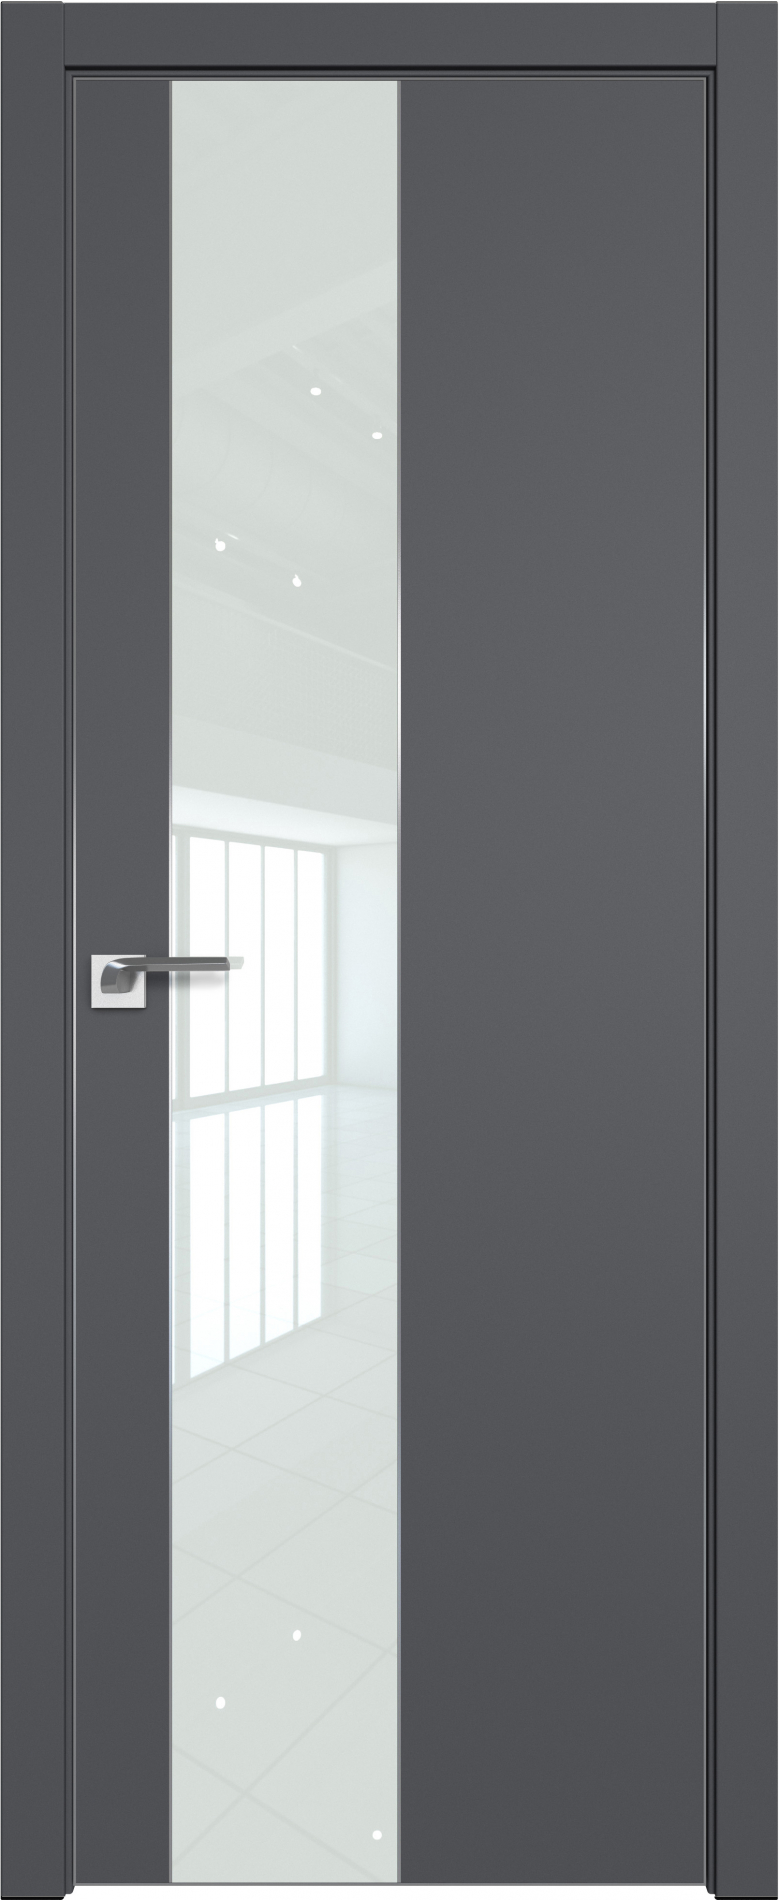 межкомнатные двери  Profil Doors 105SMK серый матовый